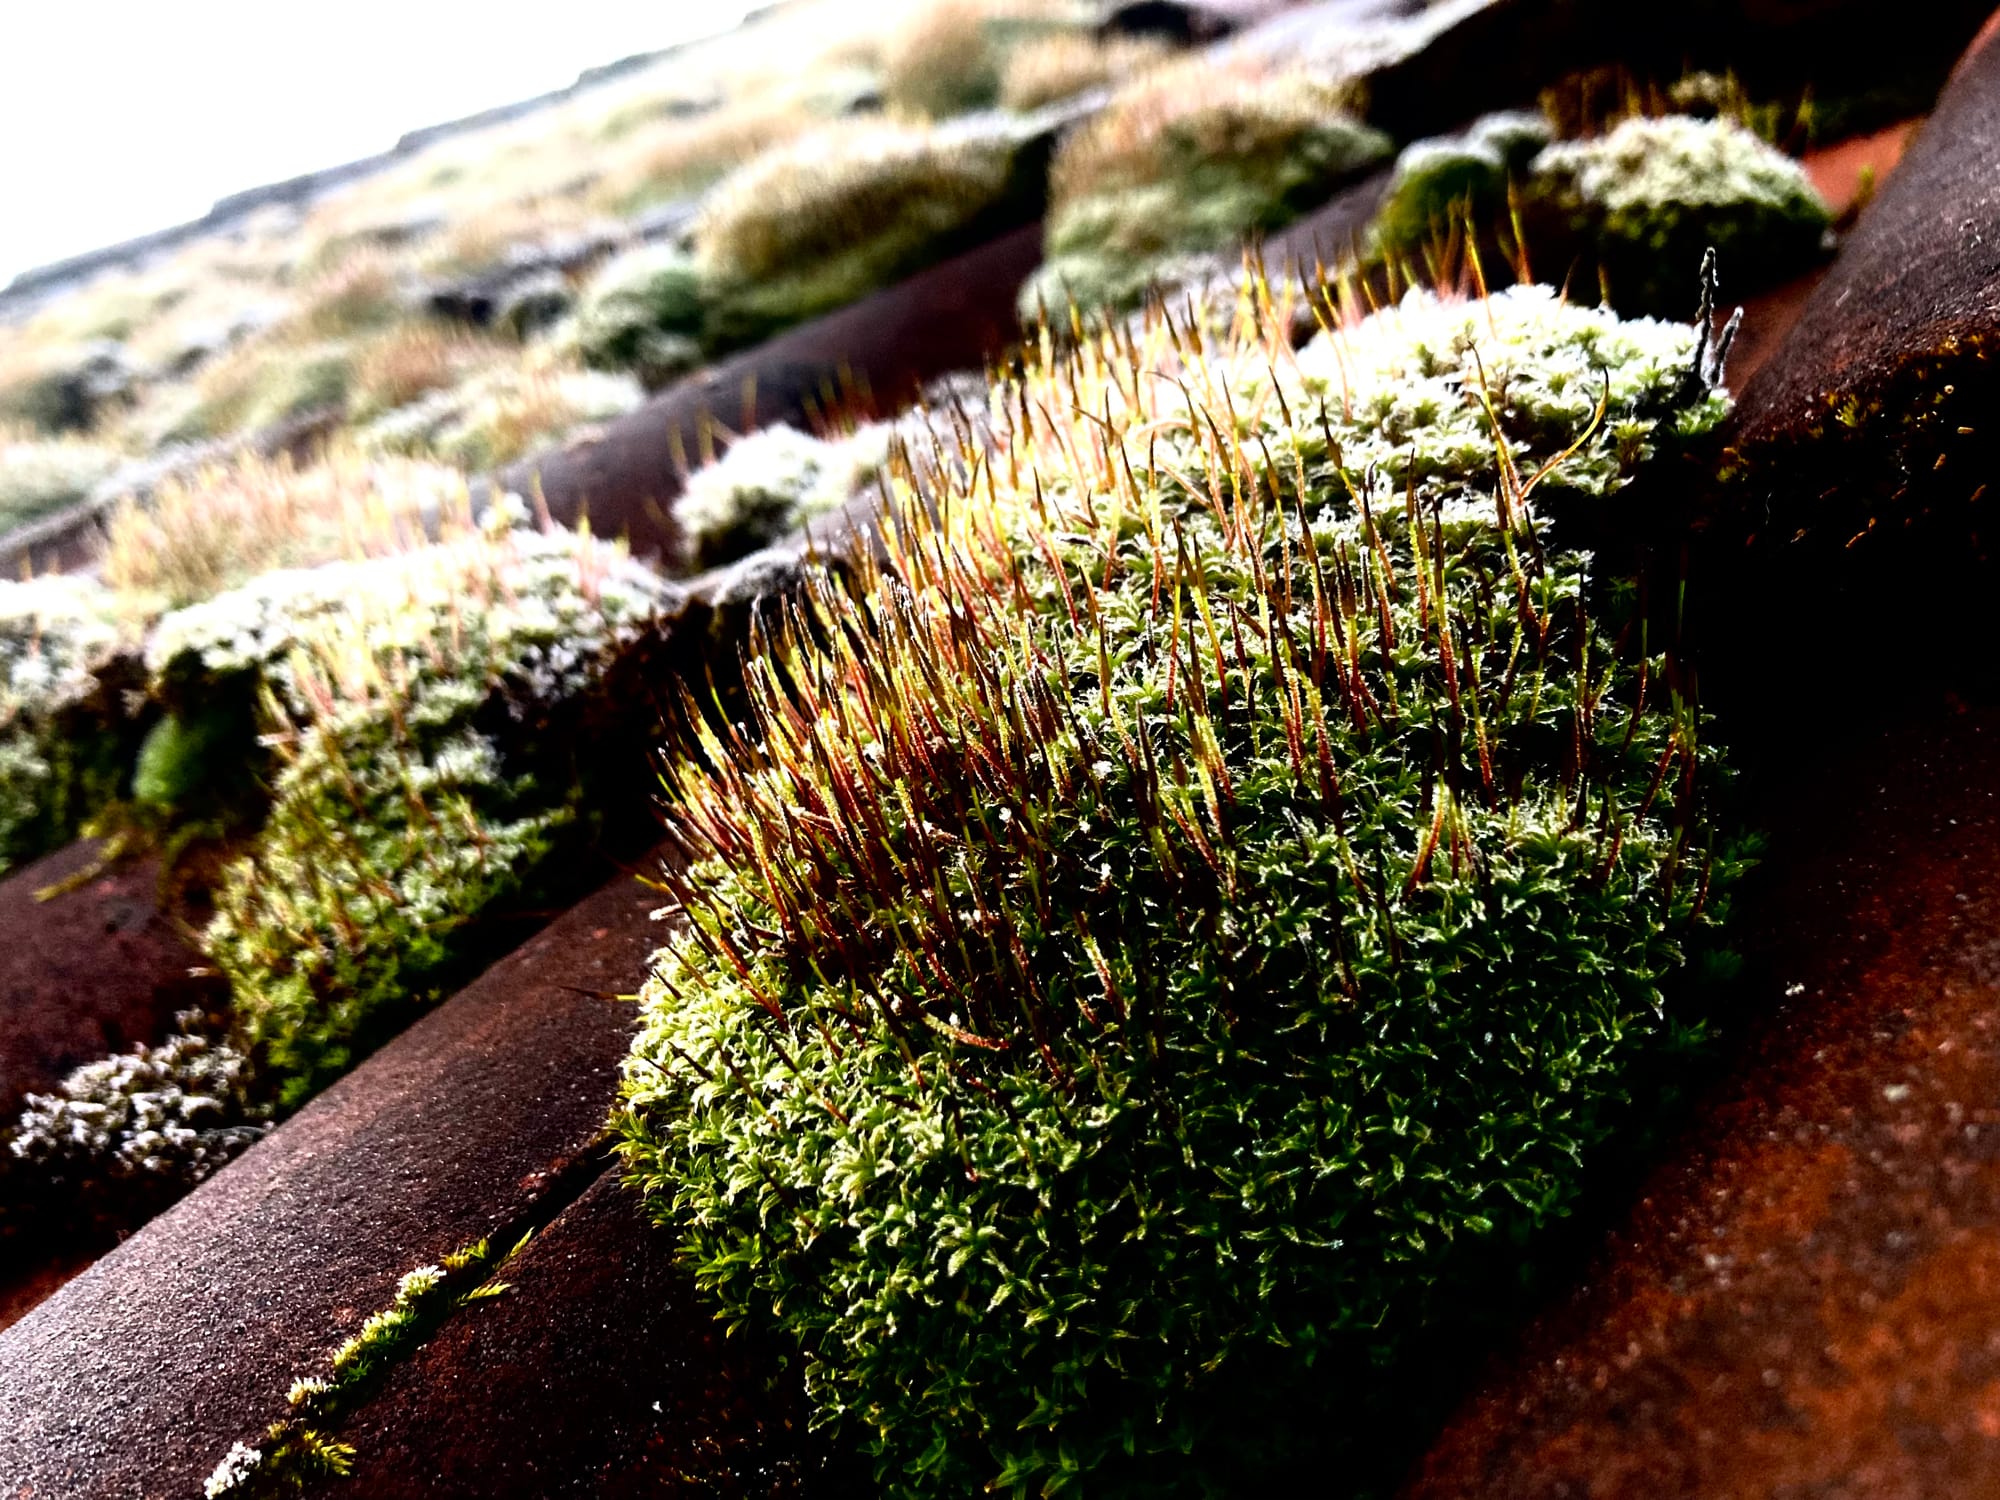 Moos auf einem Hausdach, es glitzert durch die Kälte.